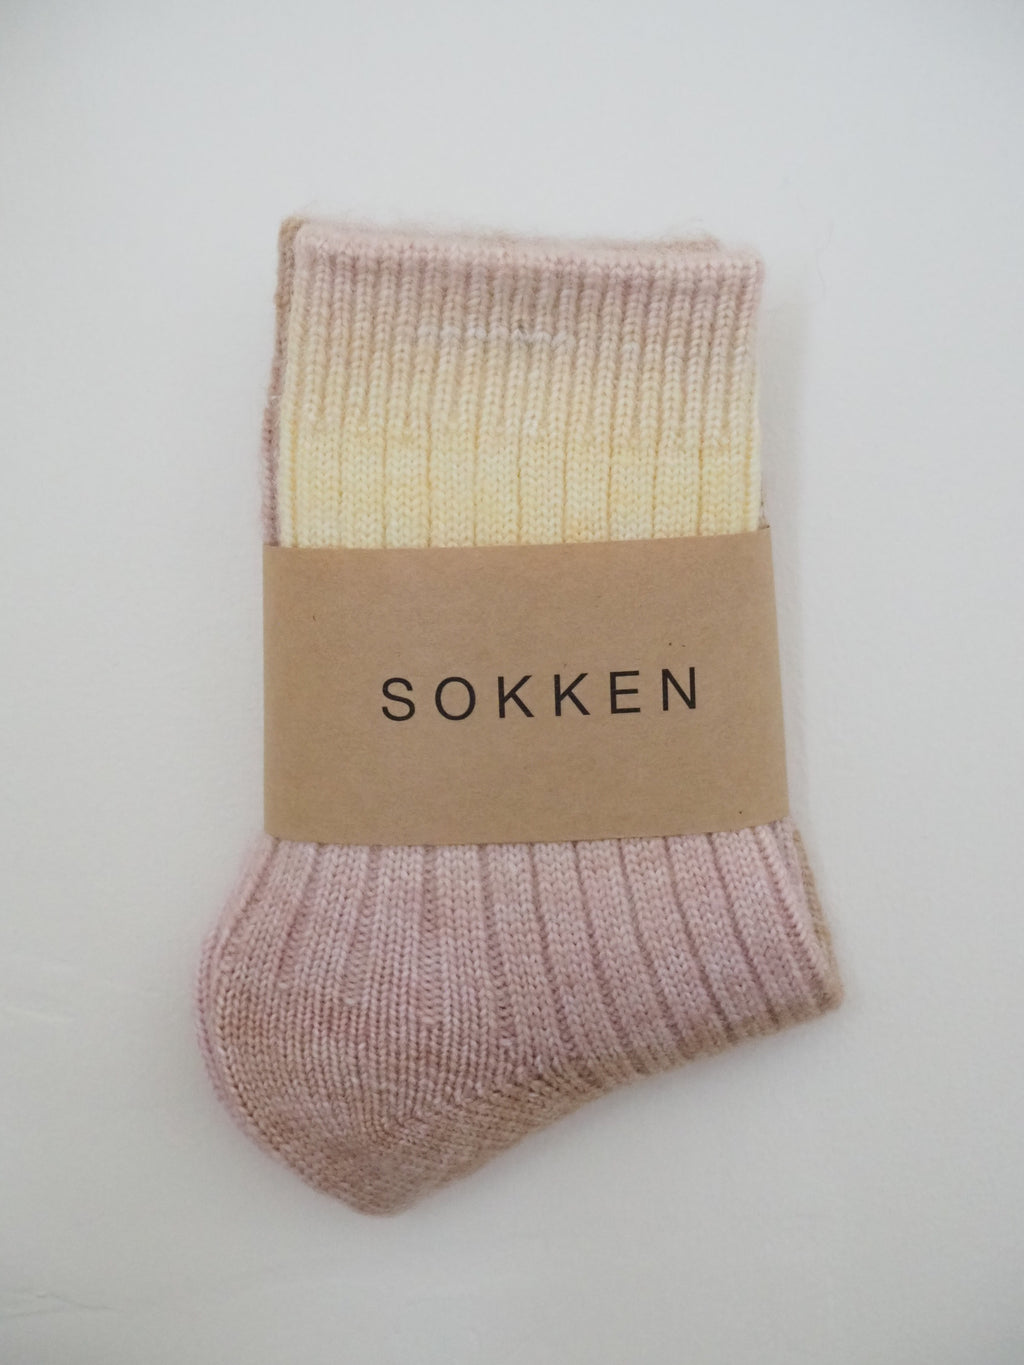 S O K K E N Seedling socks